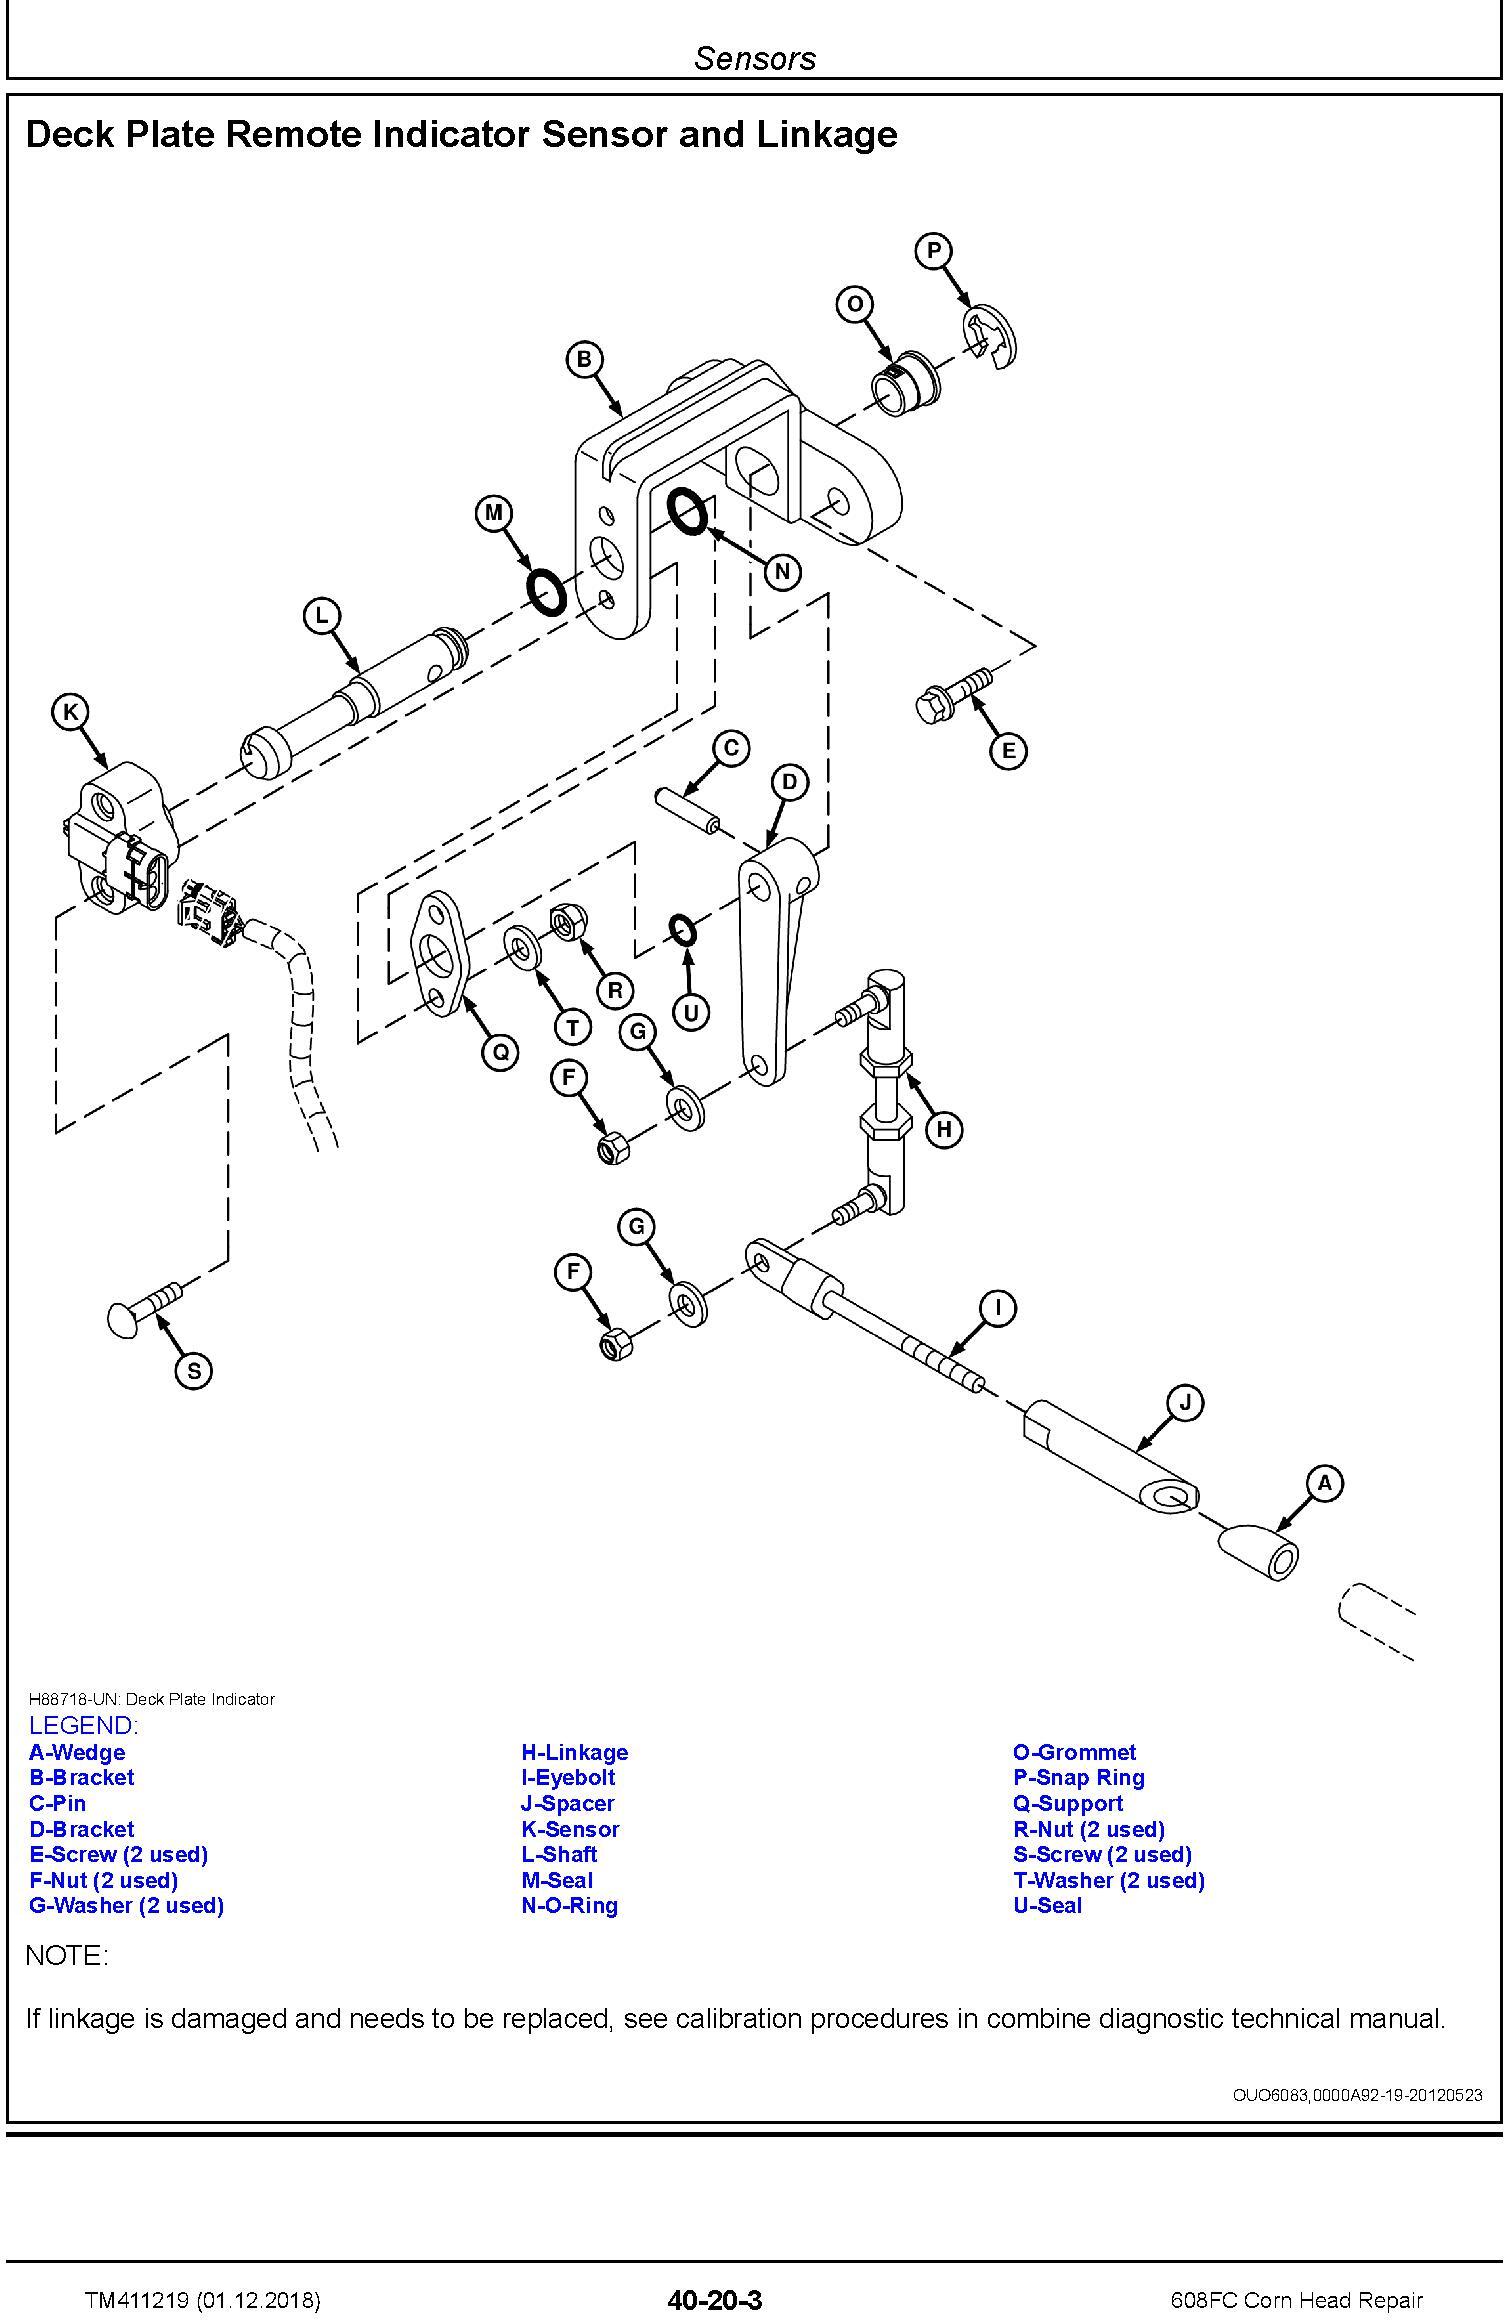 John Deere 608FC Corn Head Repair Technical Manual (TM411219) - 3